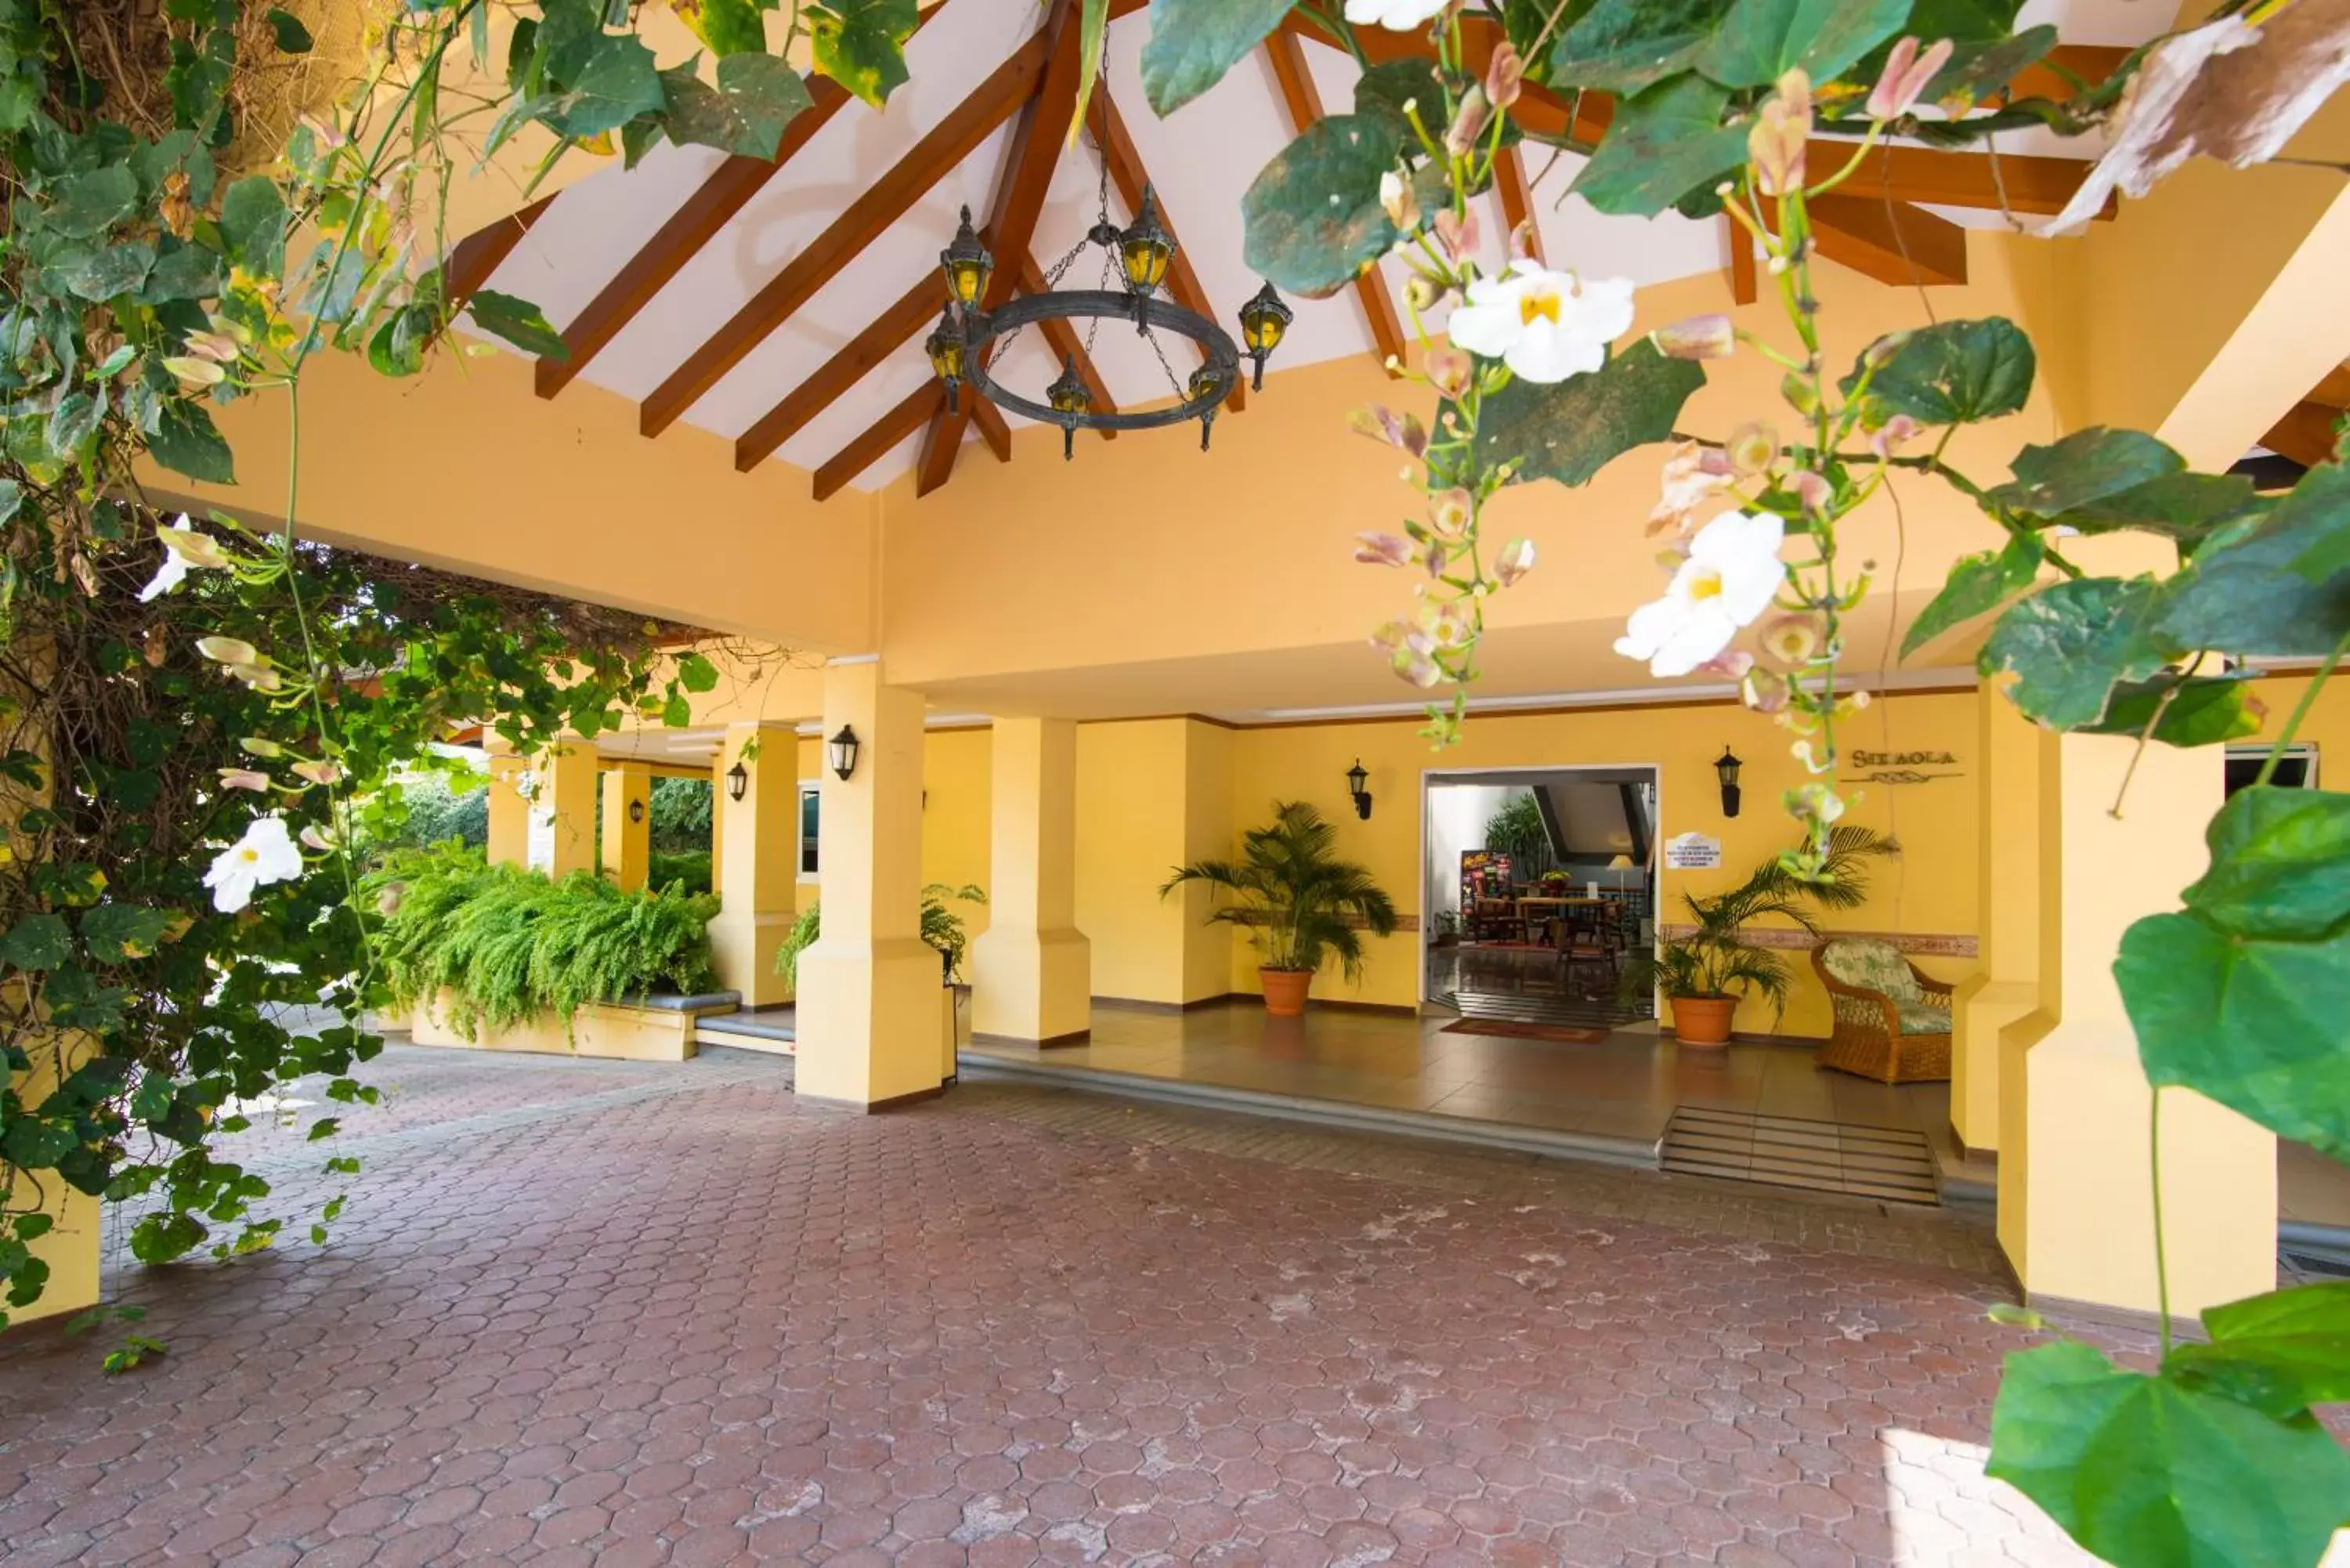 Lobby or reception in Apartotel & Suites Villas del Rio